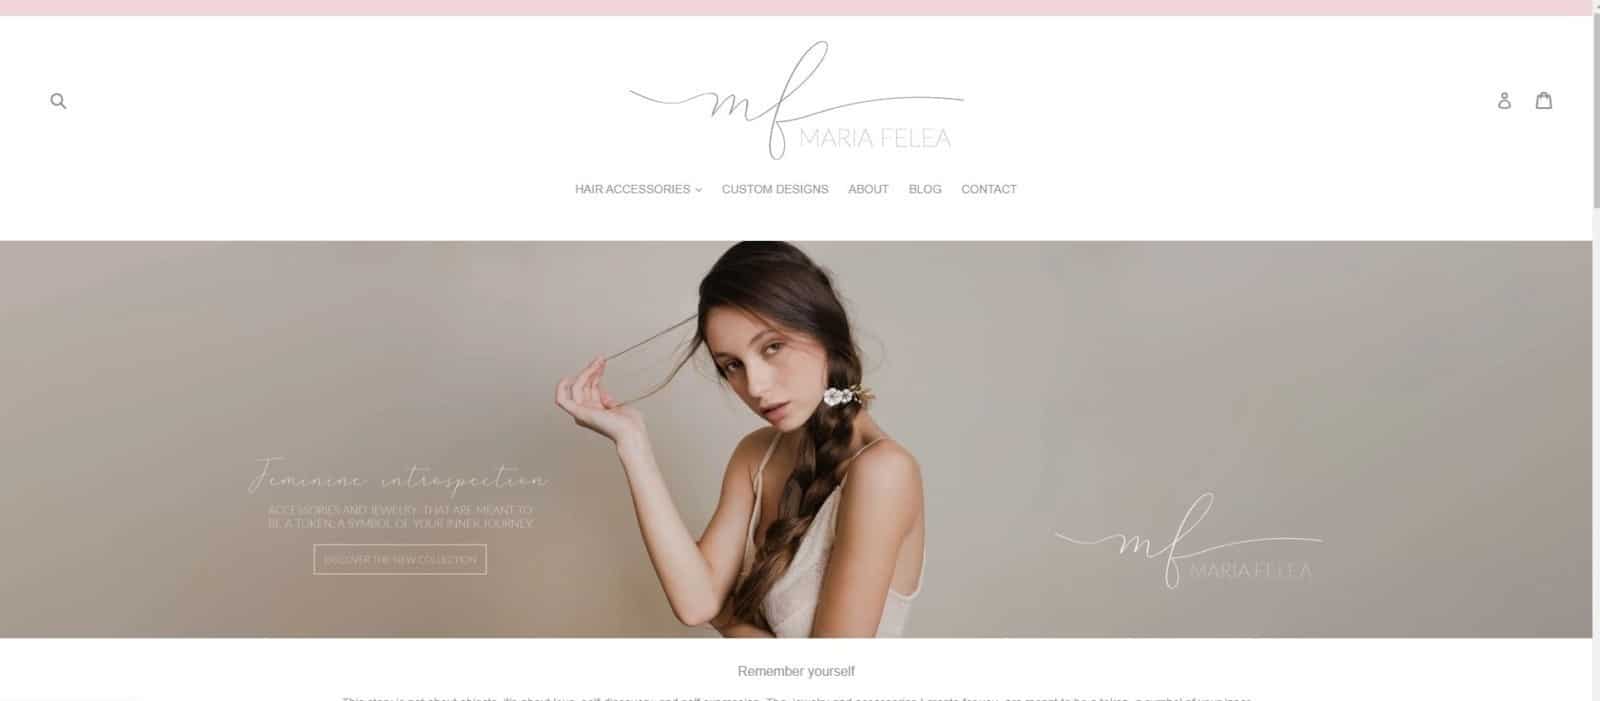 Maria Felea website, creare site web